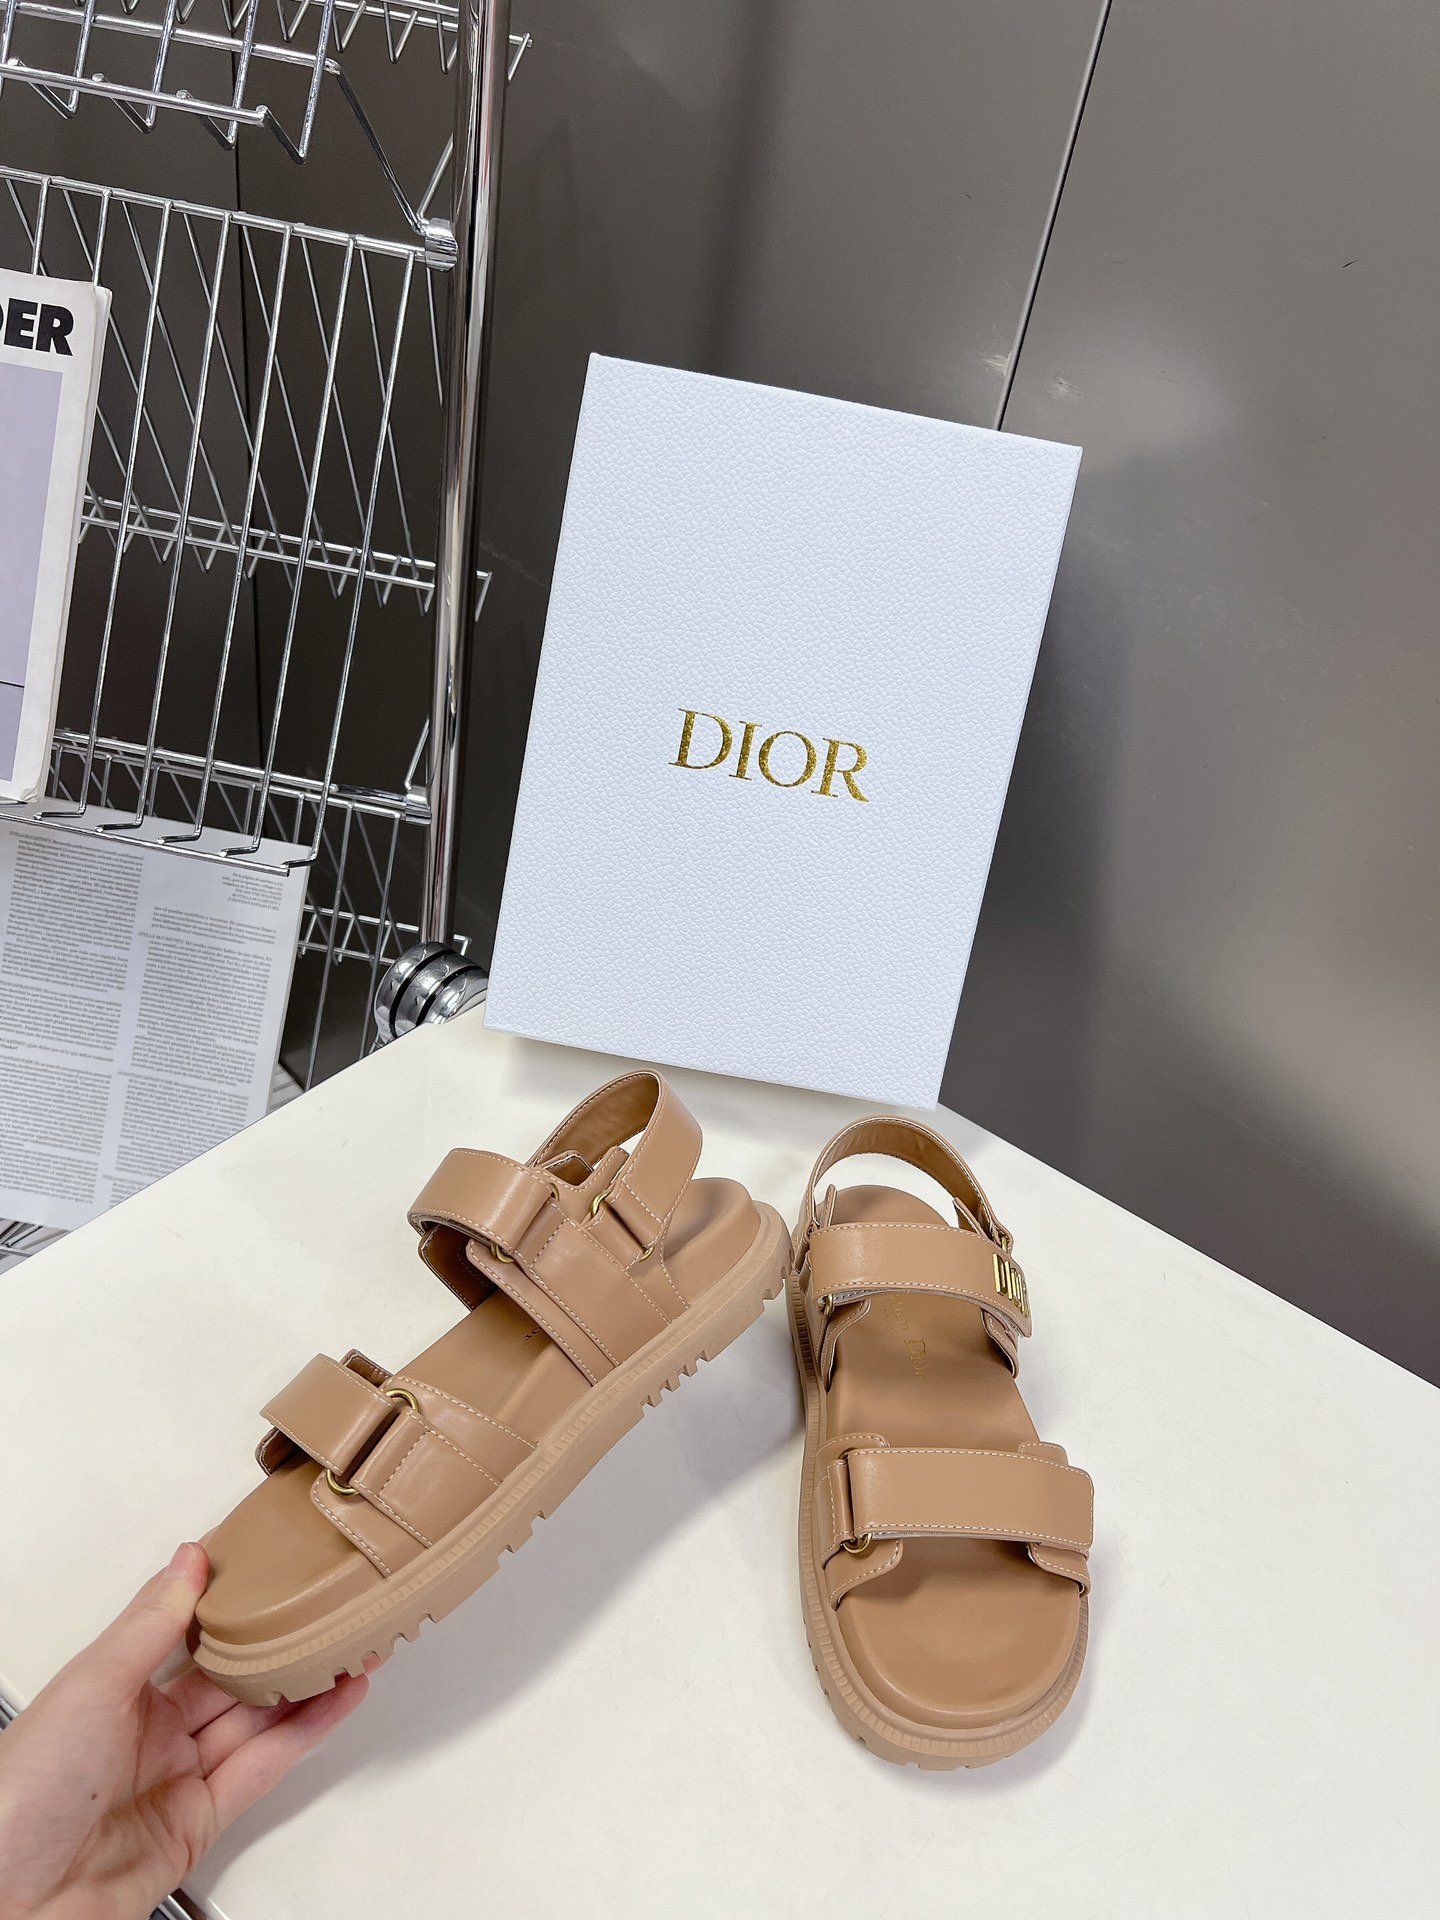 Dior迪奥春夏最新款魔术贴凉鞋超多明星网红种草经典的版型设计上迪奥LOGO五金点缀超好看超百搭上脚非常